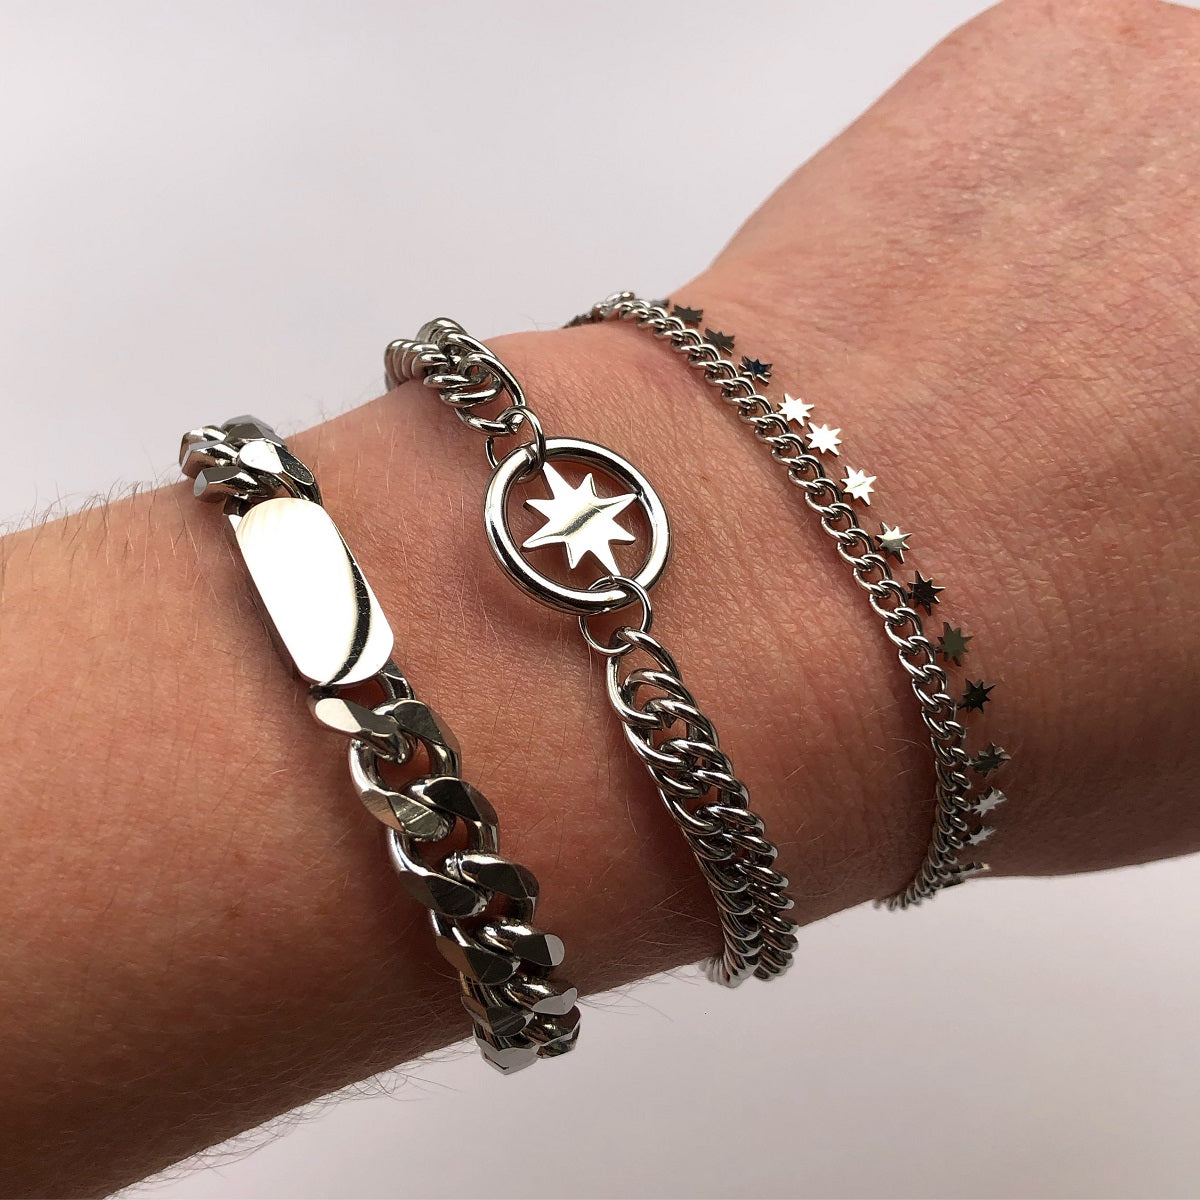 Waterproof armband Starry Nights zilver, gemaakt van stainless steel. De armband zilver verkleurt niet en blijft mooi. Deze waterproof armband is verkrijgbaar in het goud en zilver. www.jenelry.com